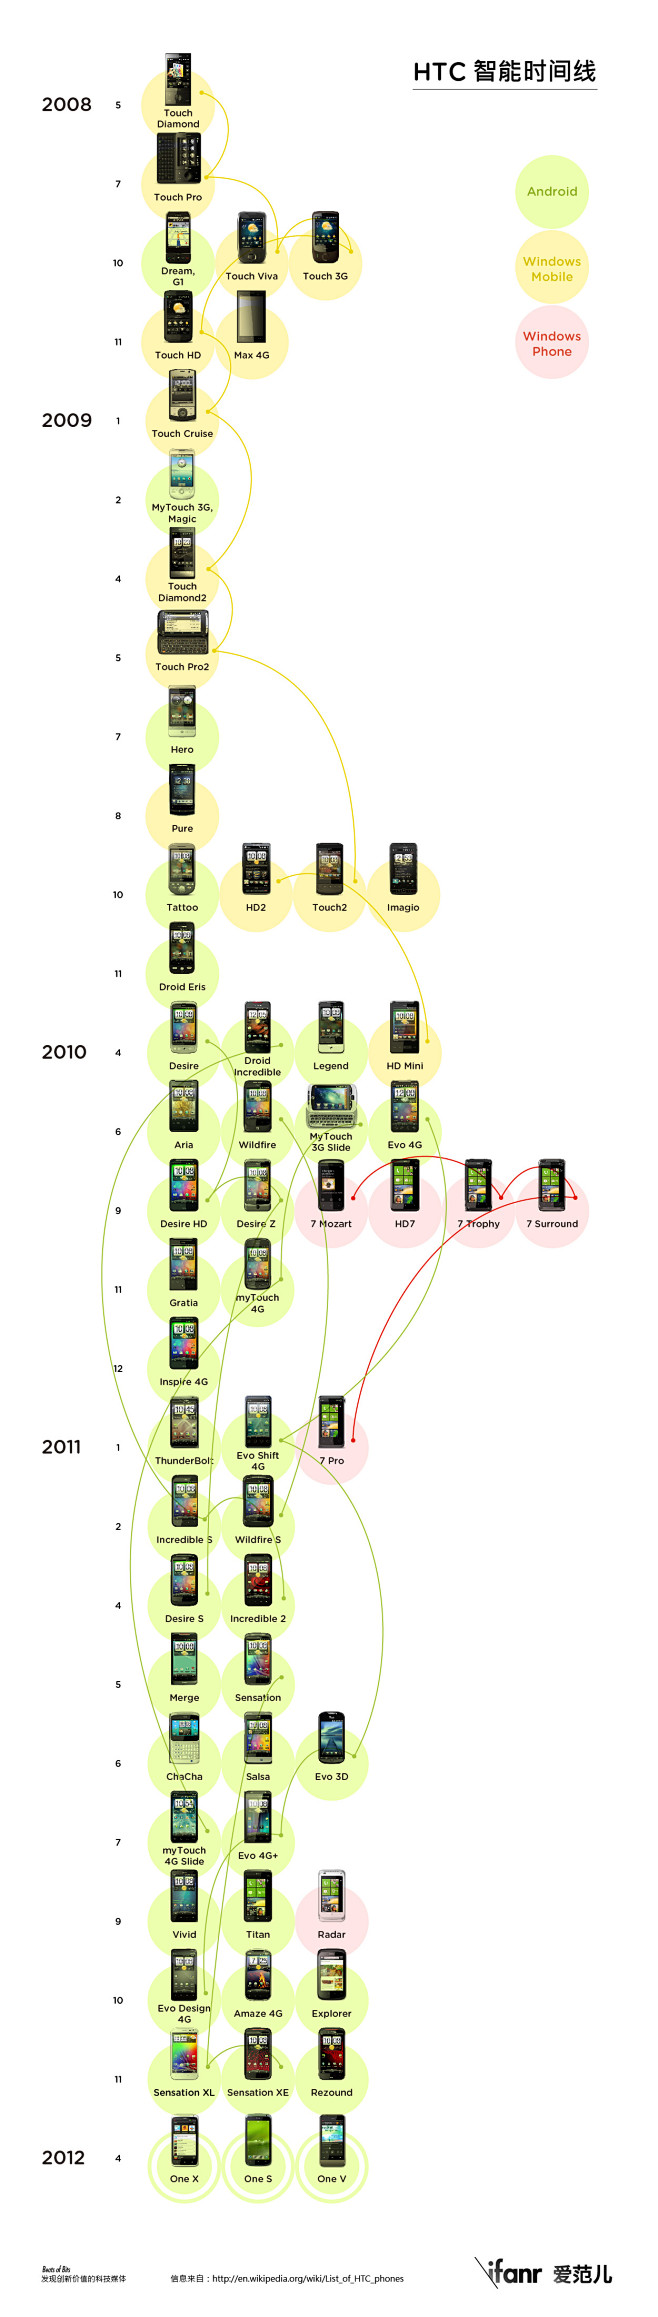 HTC产品时间线